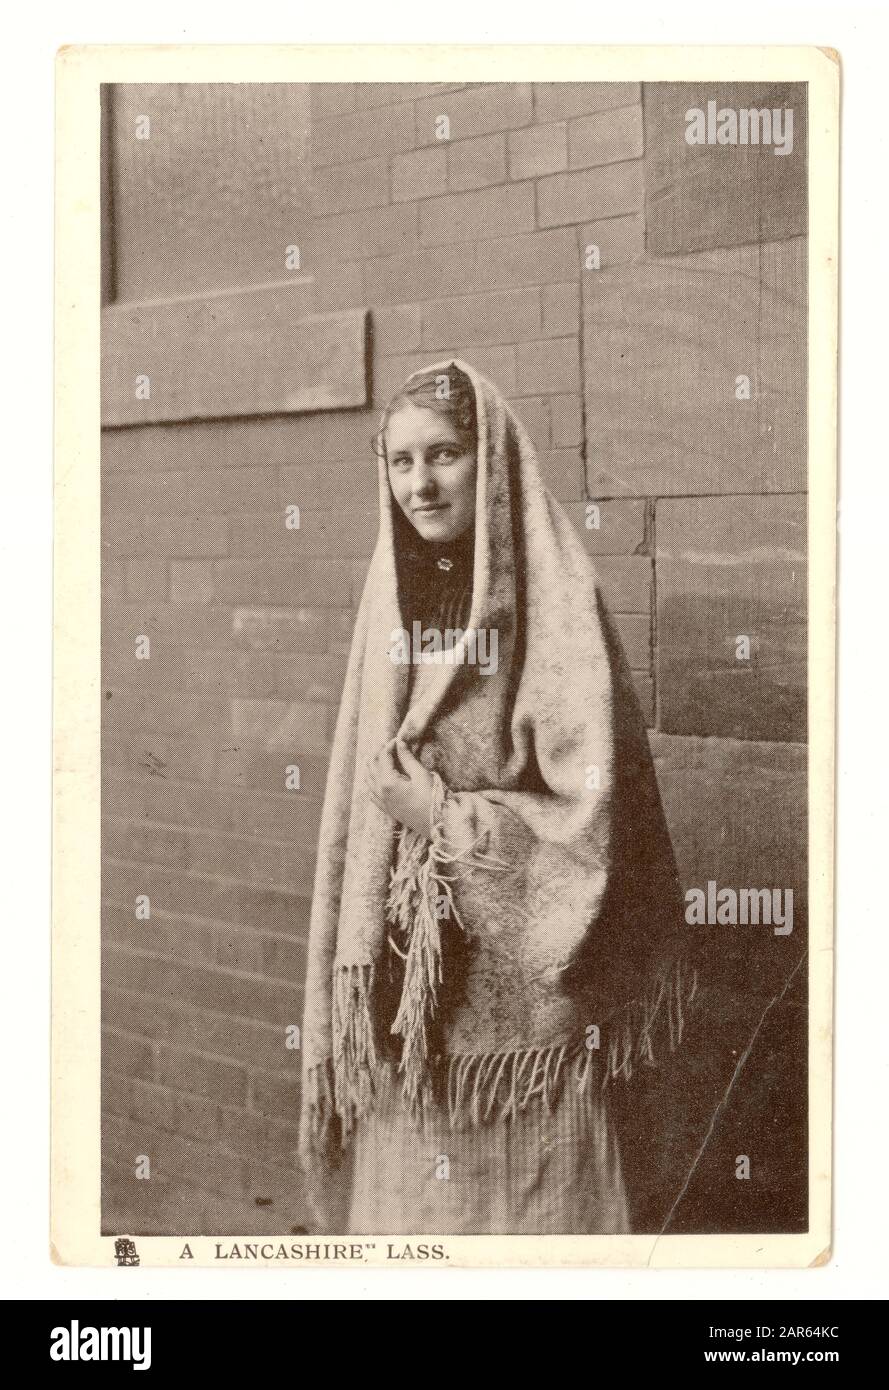 Original postal de principios de 1900 titulada 'A Lancashire Lass'. La joven lleva un mantón típico de las trabajadoras de la fábrica en este momento. Reino Unido, alrededor de 1906 Foto de stock